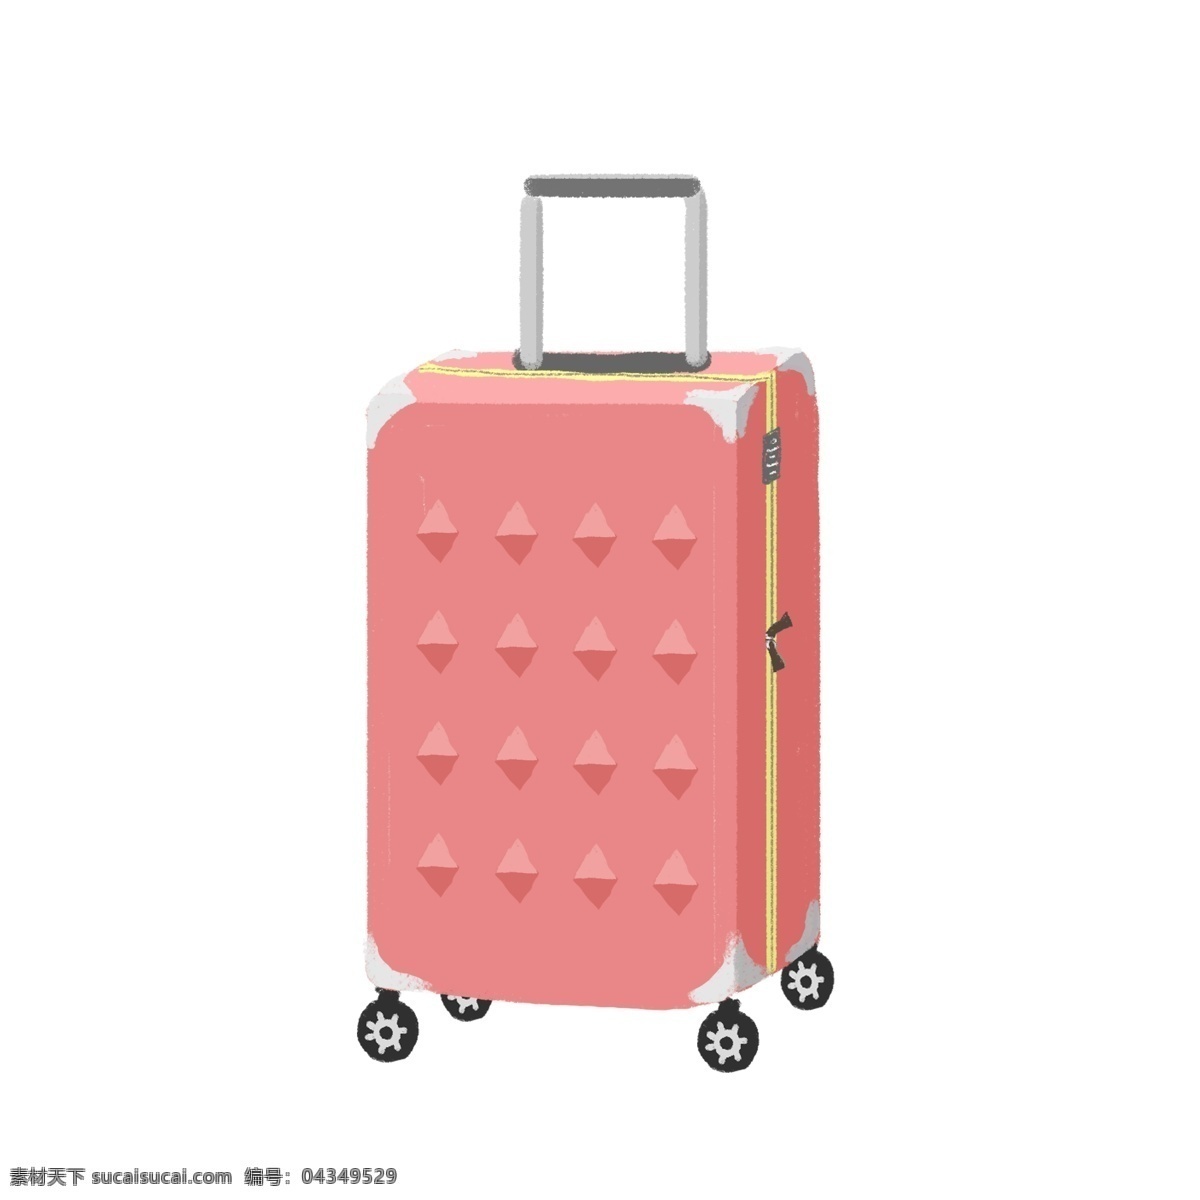 商用 手绘 简约 微 立体 行李箱 旅游出行 度假 元素 旅游